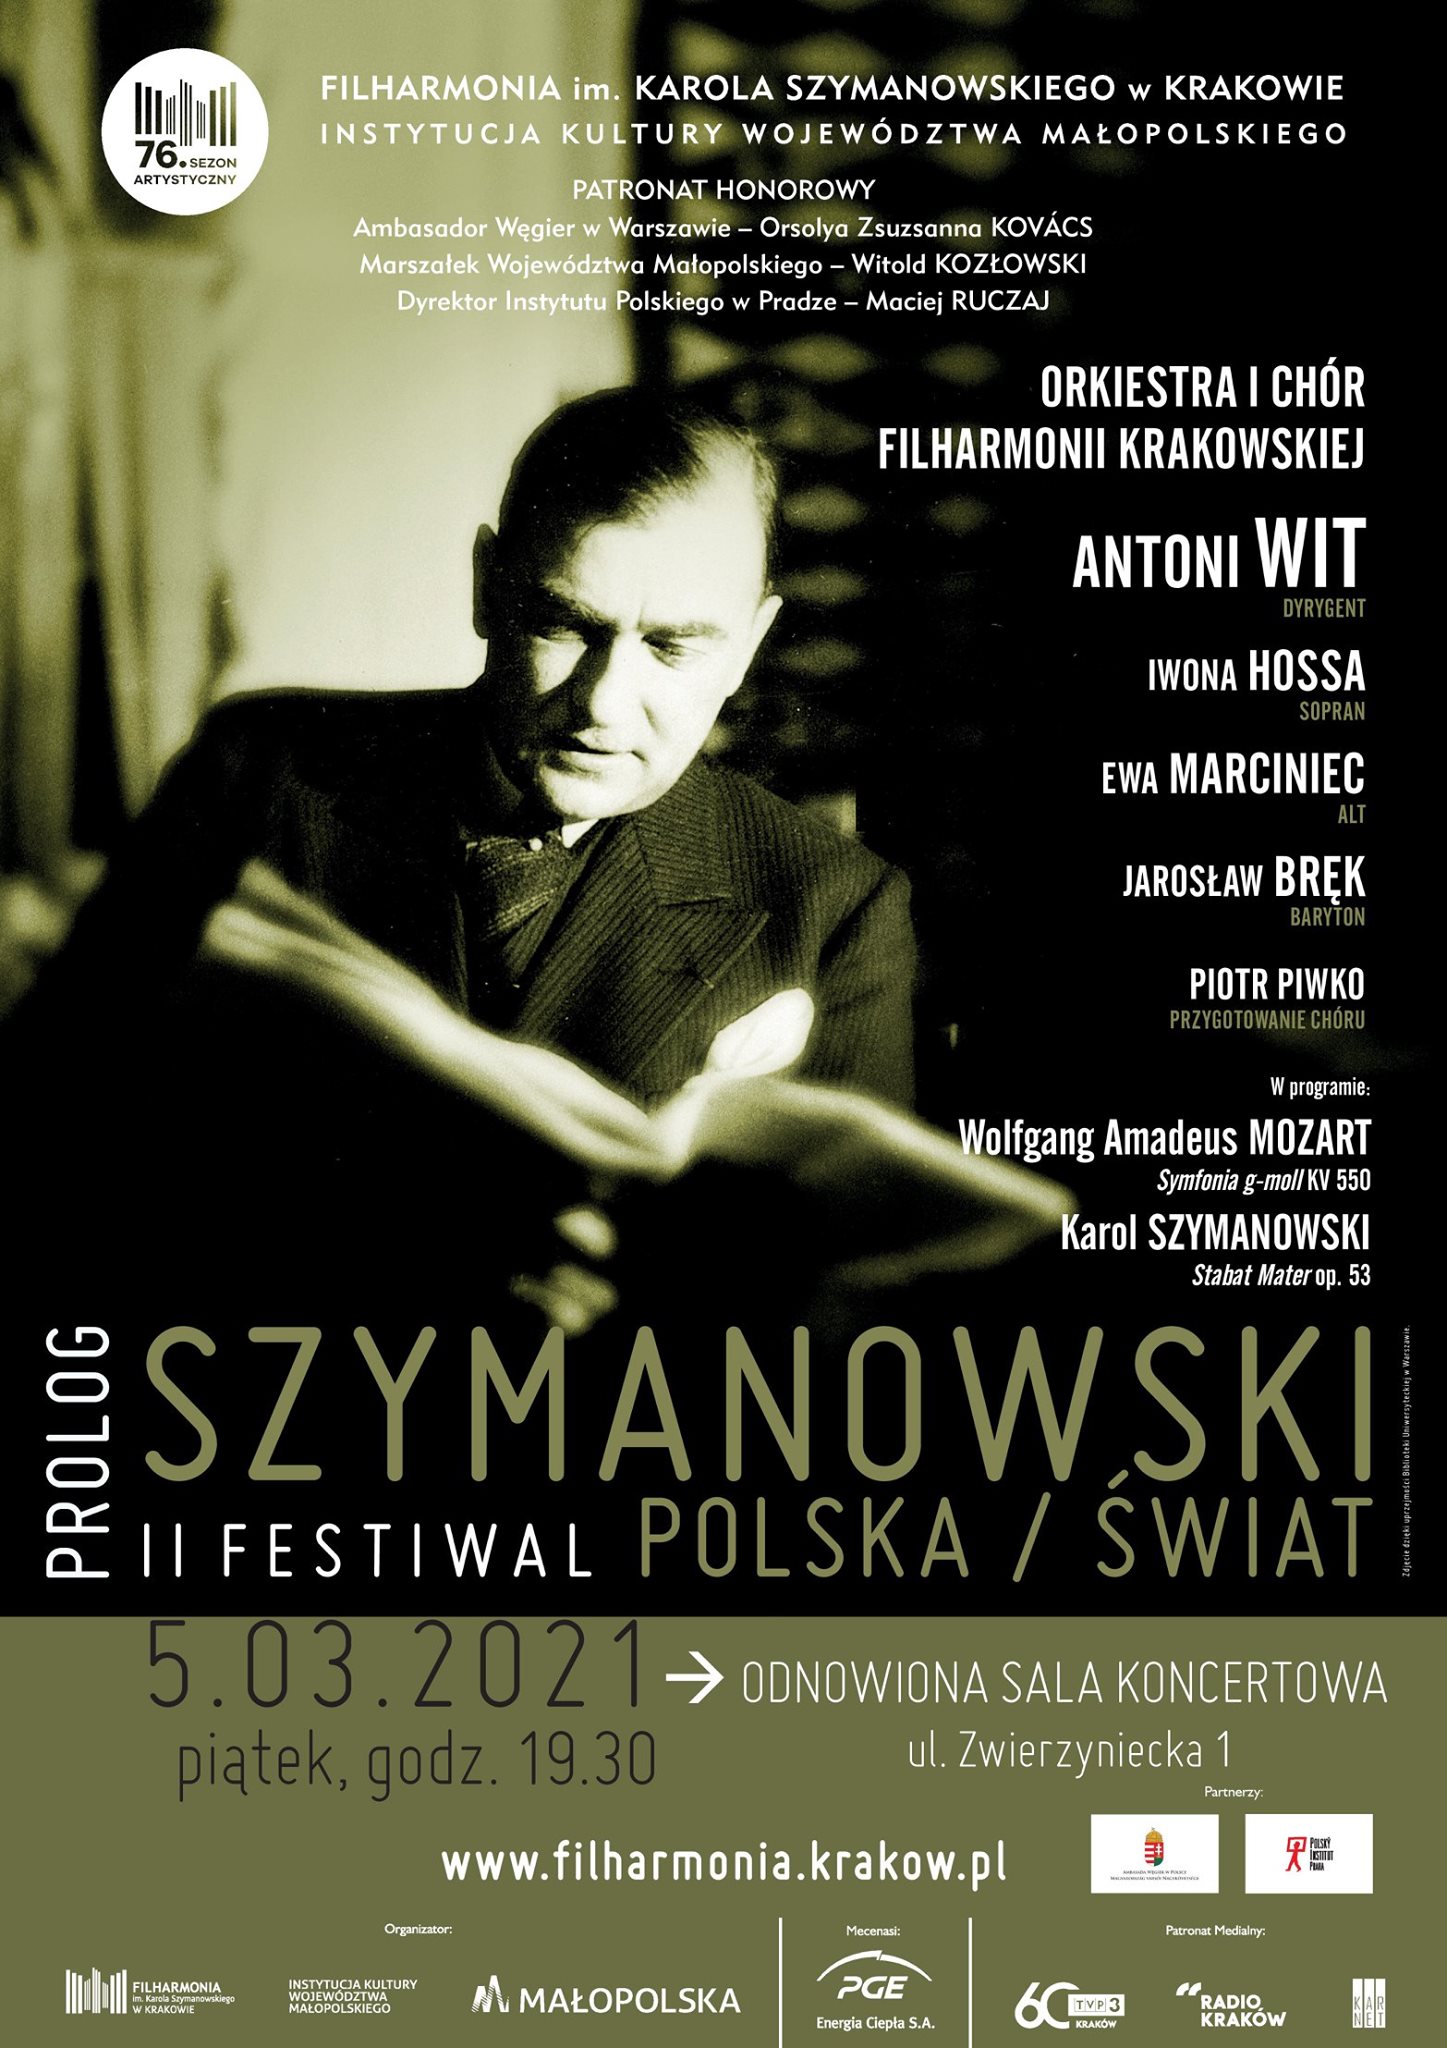 Prolog Festowalu Szymanowski/Polska/Świat